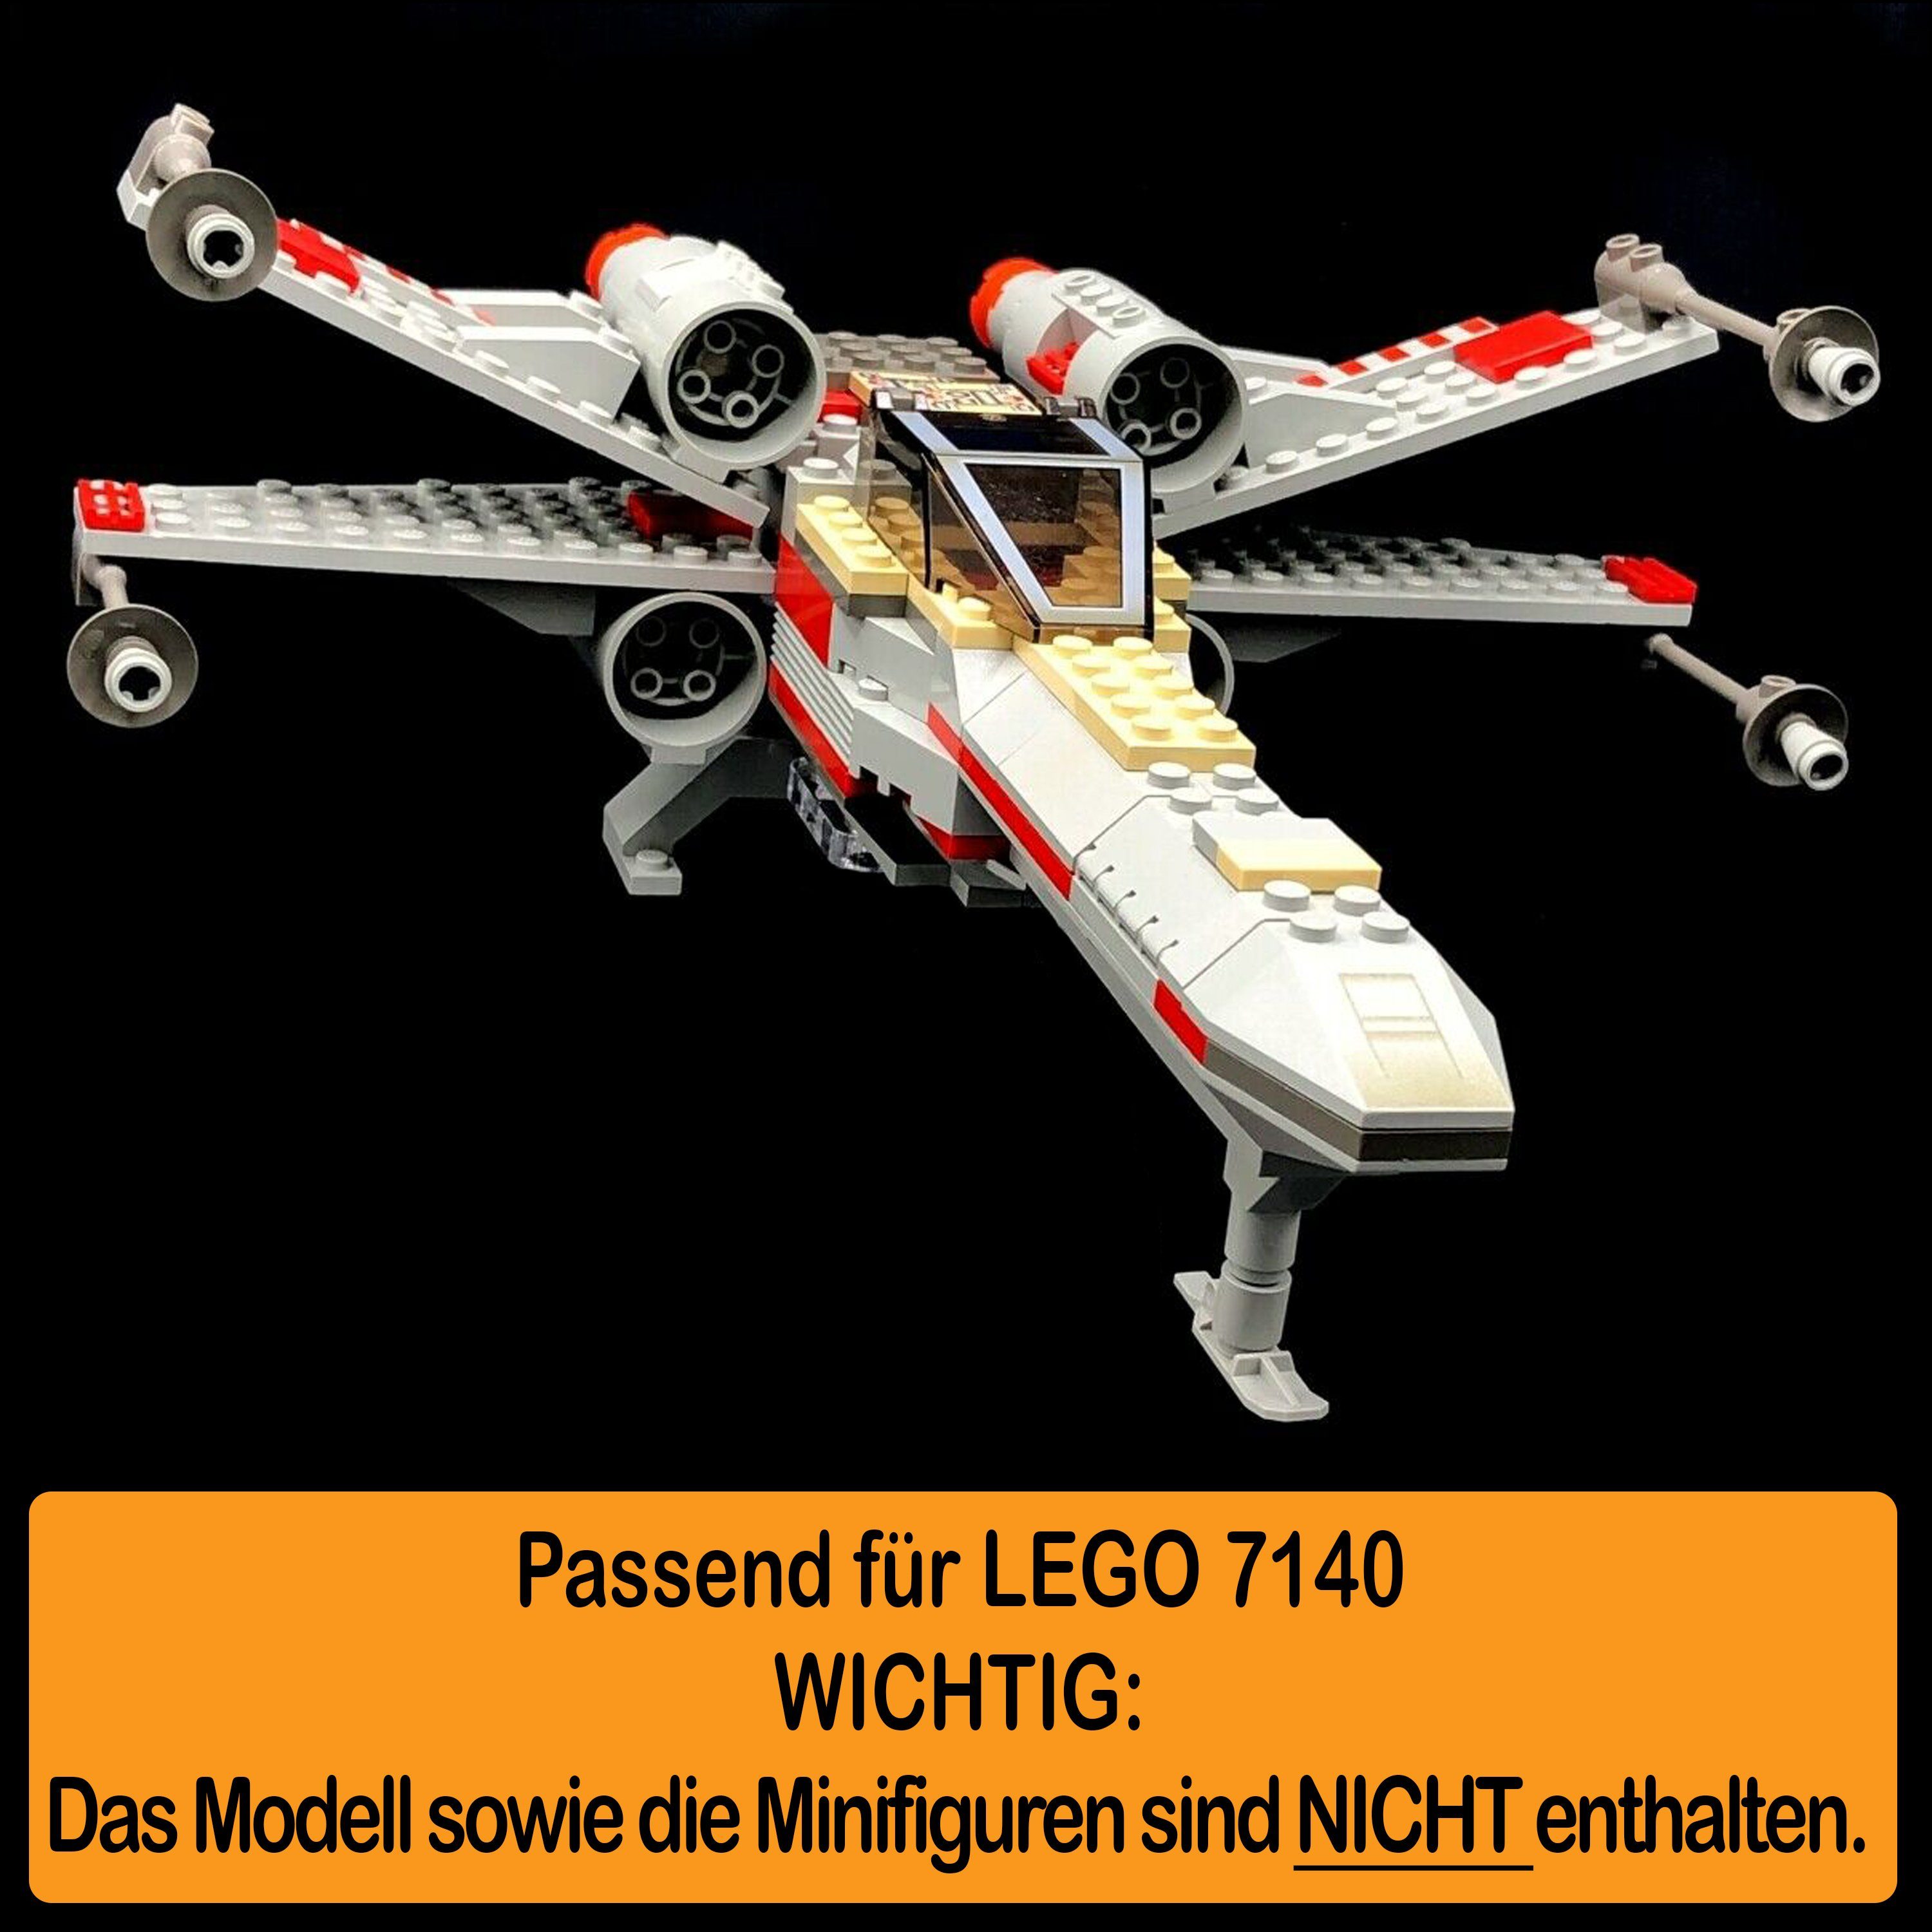 AREA17 Standfuß und Stand für Display Germany (verschiedene selbst Fighter Positionen LEGO Winkel zusammenbauen), Acryl 7140 zum X-Wing 100% in einstellbar, Made